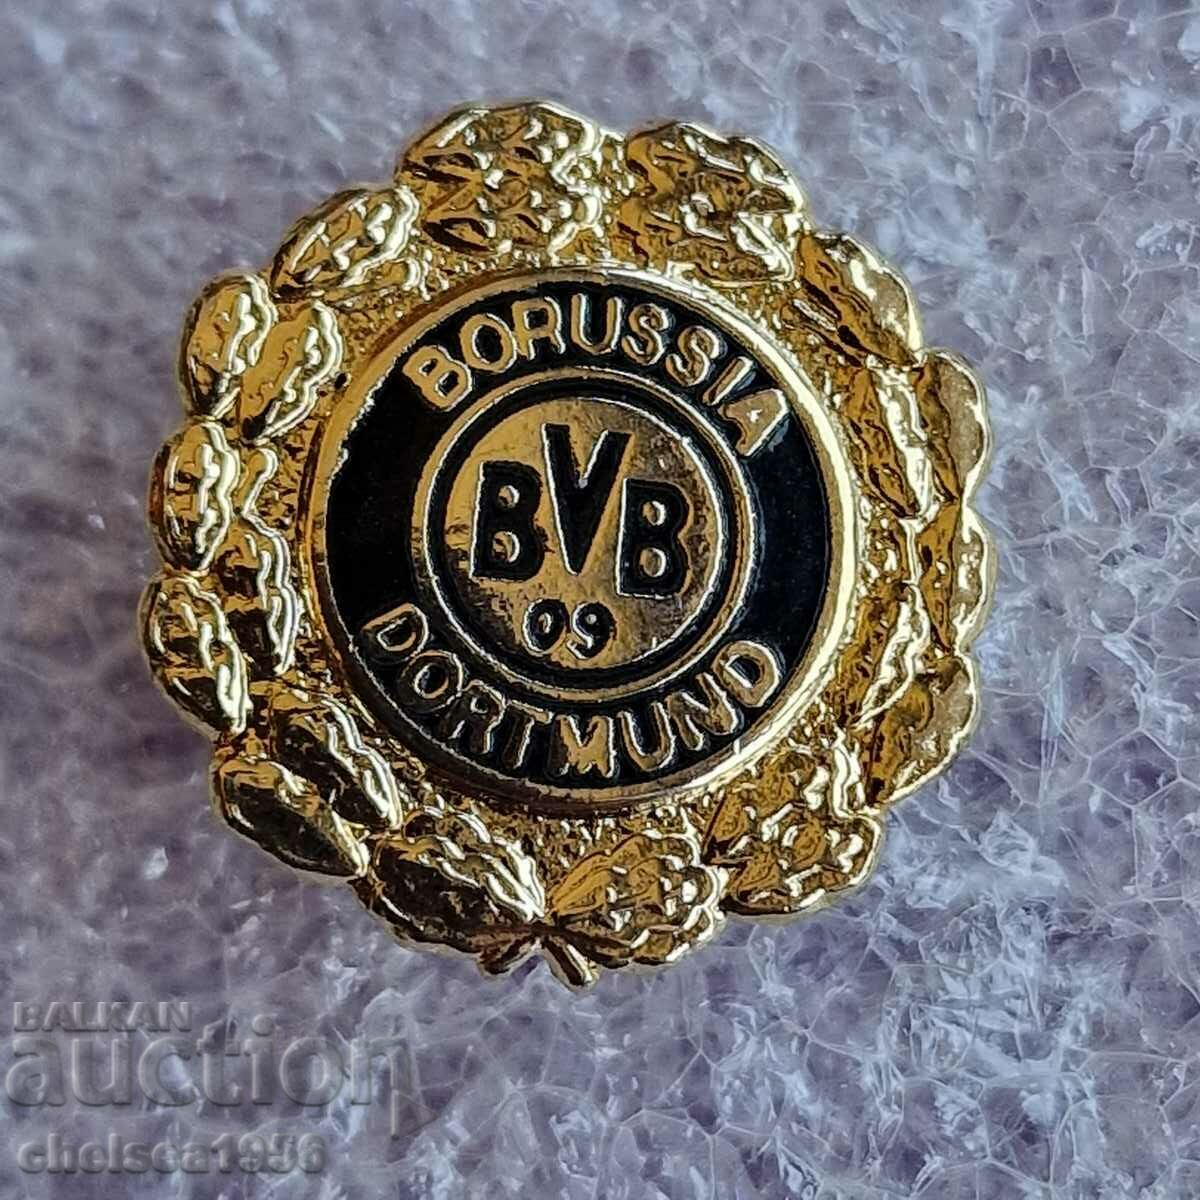 FA Borussia Dortmund badge